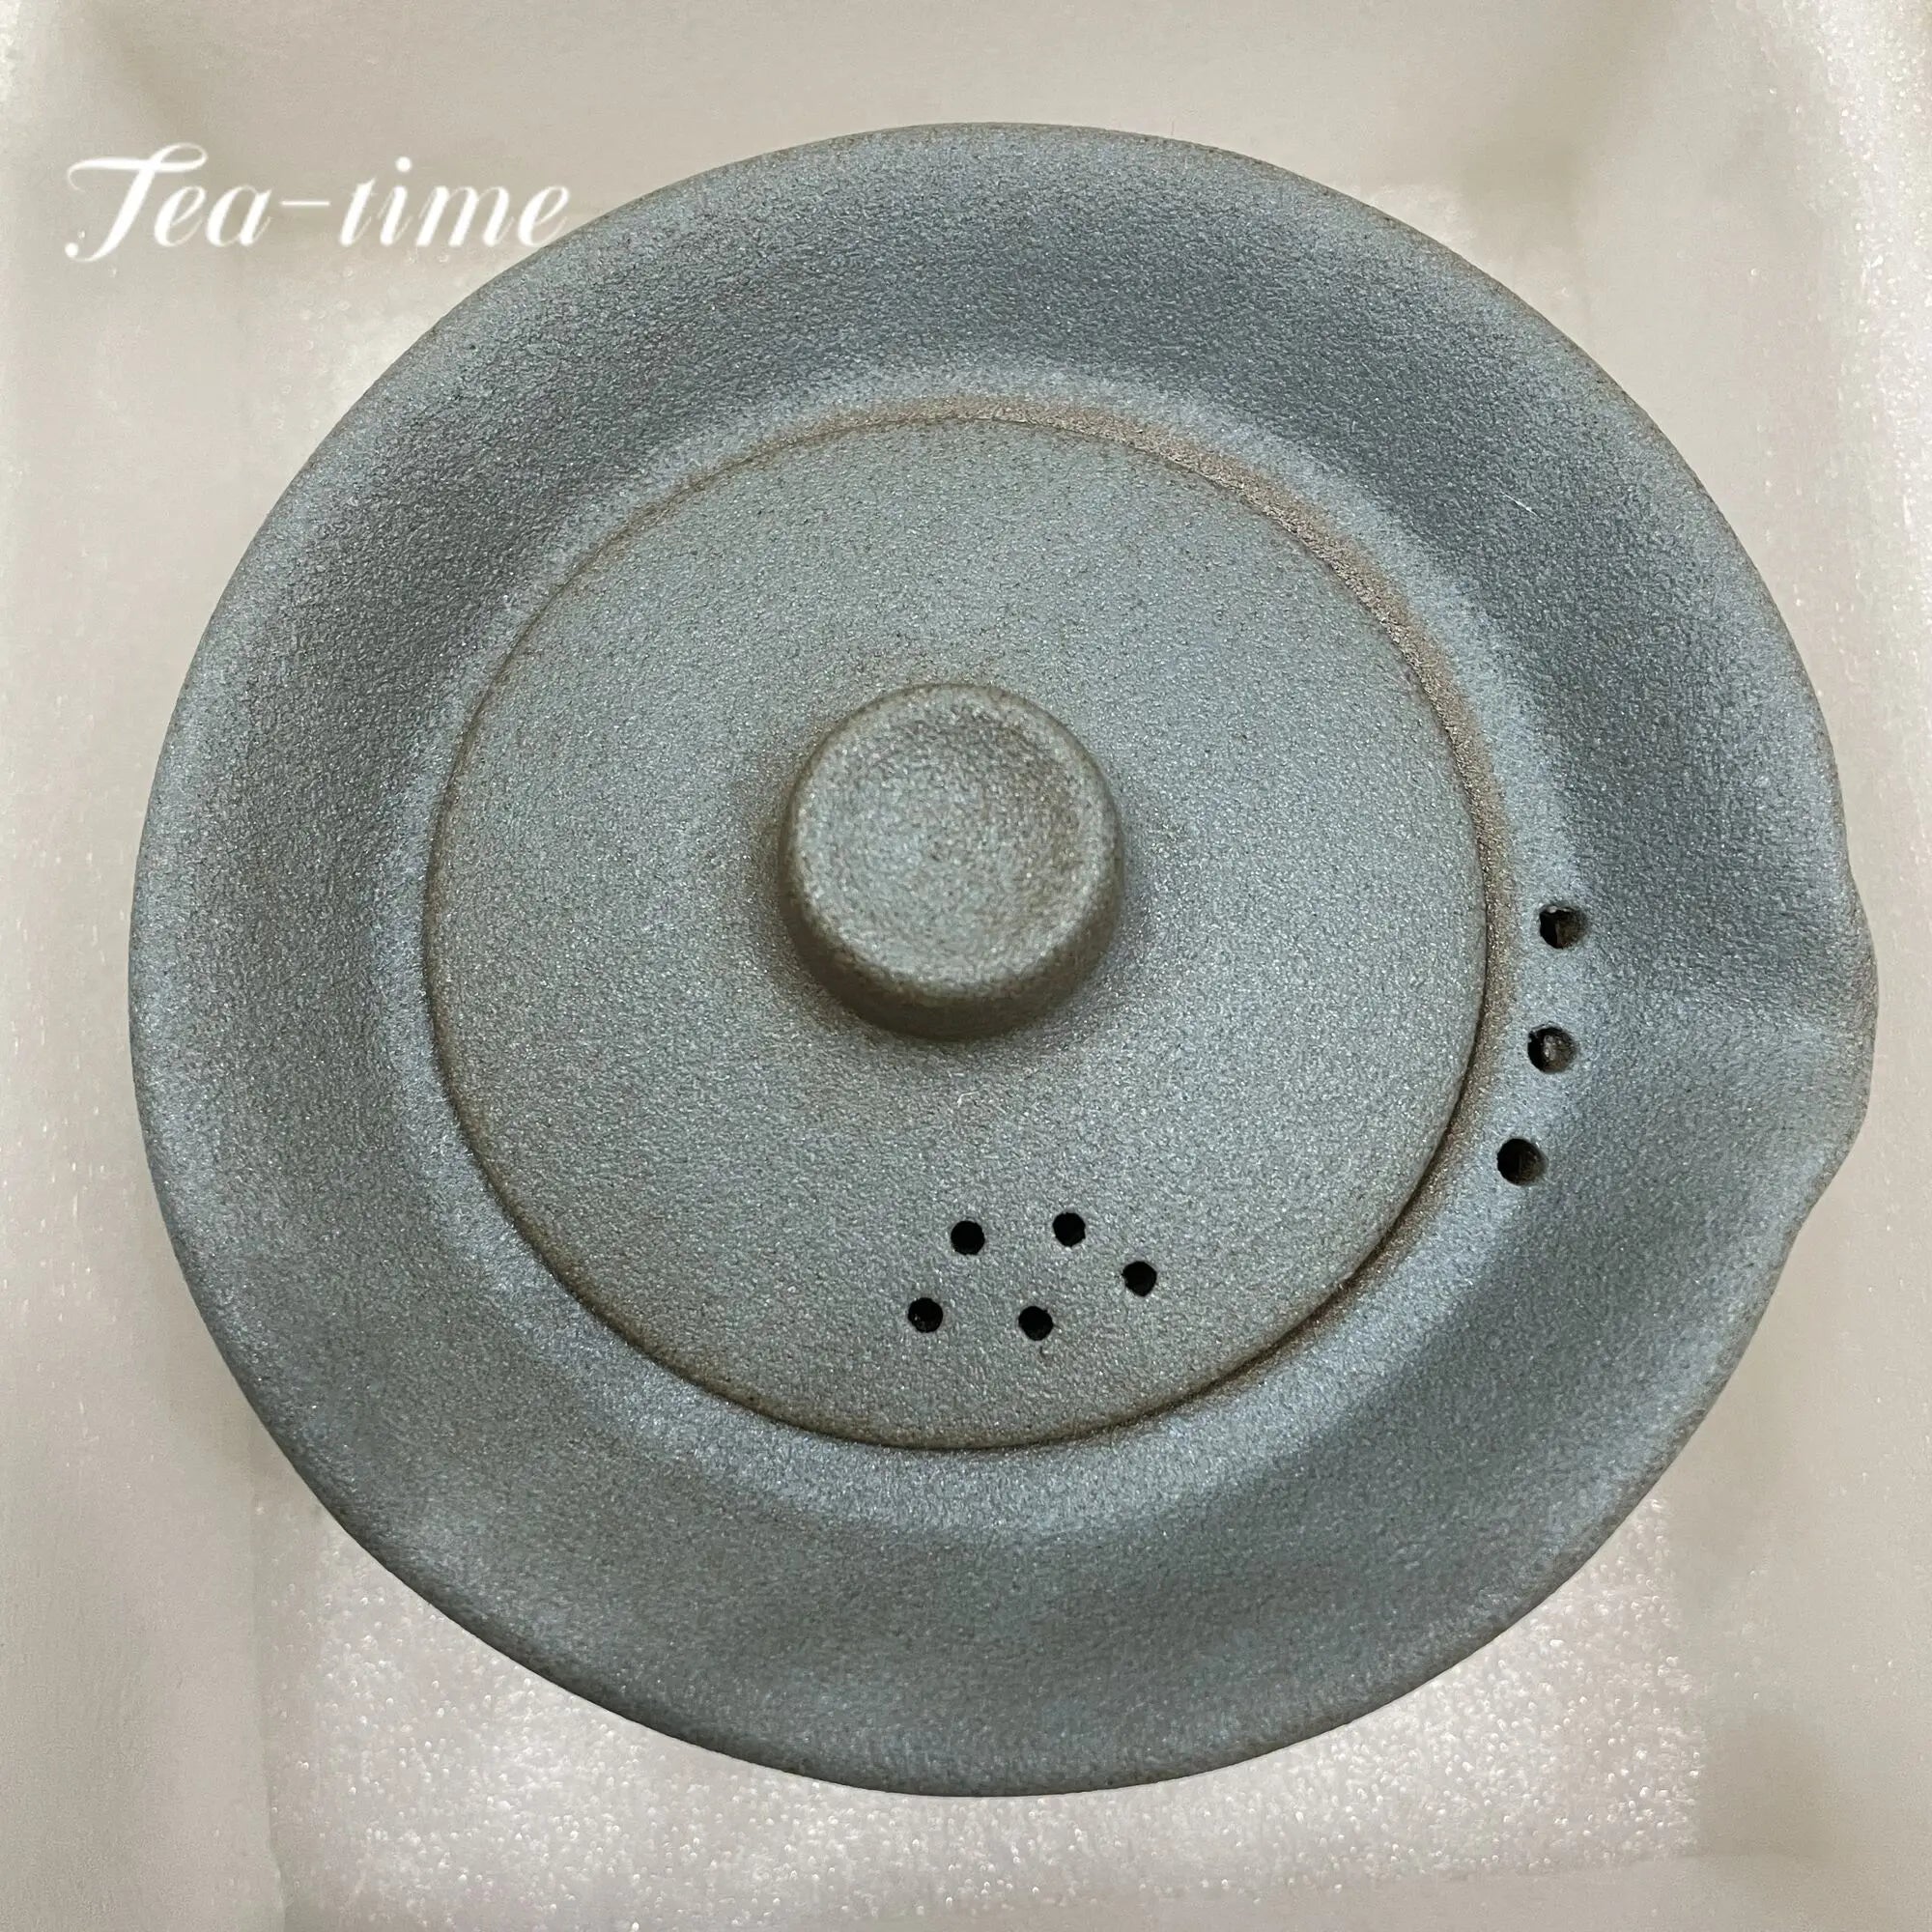 200 ml japansk keramisk tekande kedel te fremstilling af gaiwan te cup til puer 1 skål 2 kopper te sæt retro rå keramik drinkware